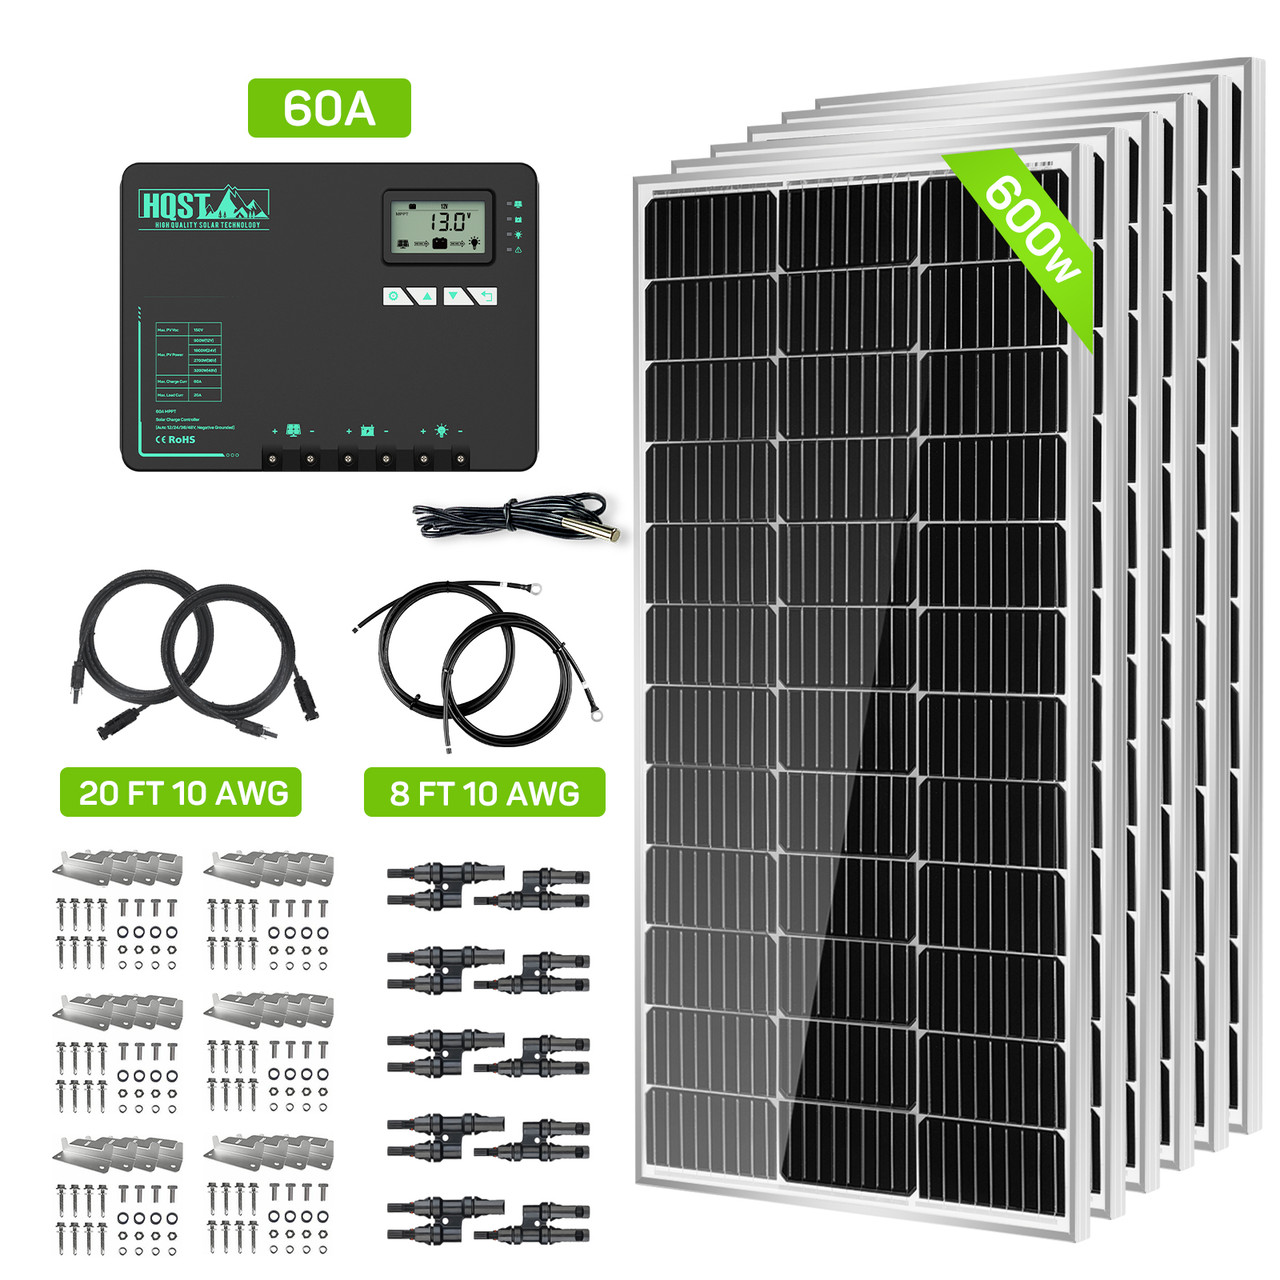 Kit solar caravana 600W 12V 1500W/dia